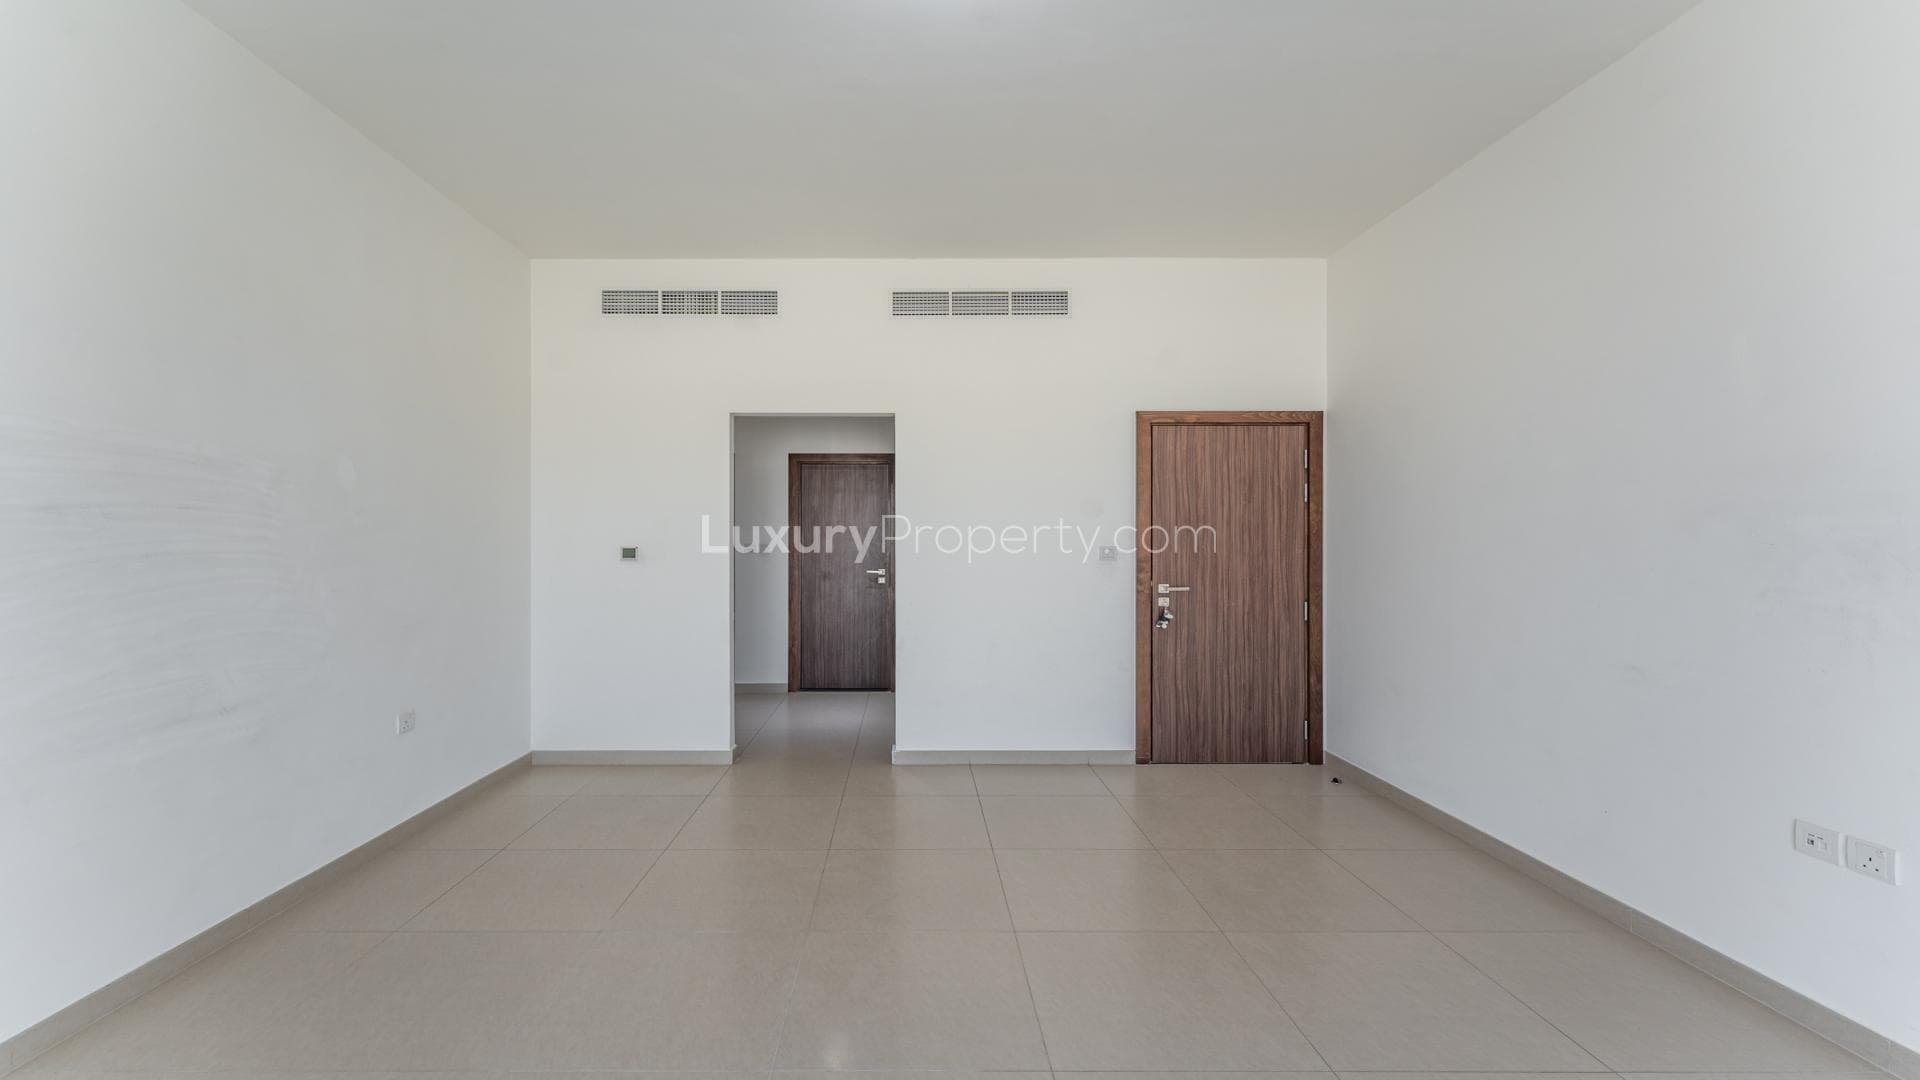 5 Bedroom Villa For Sale Al Kazim Tower 1 Lp37350 A6fa35da9494700.jpg